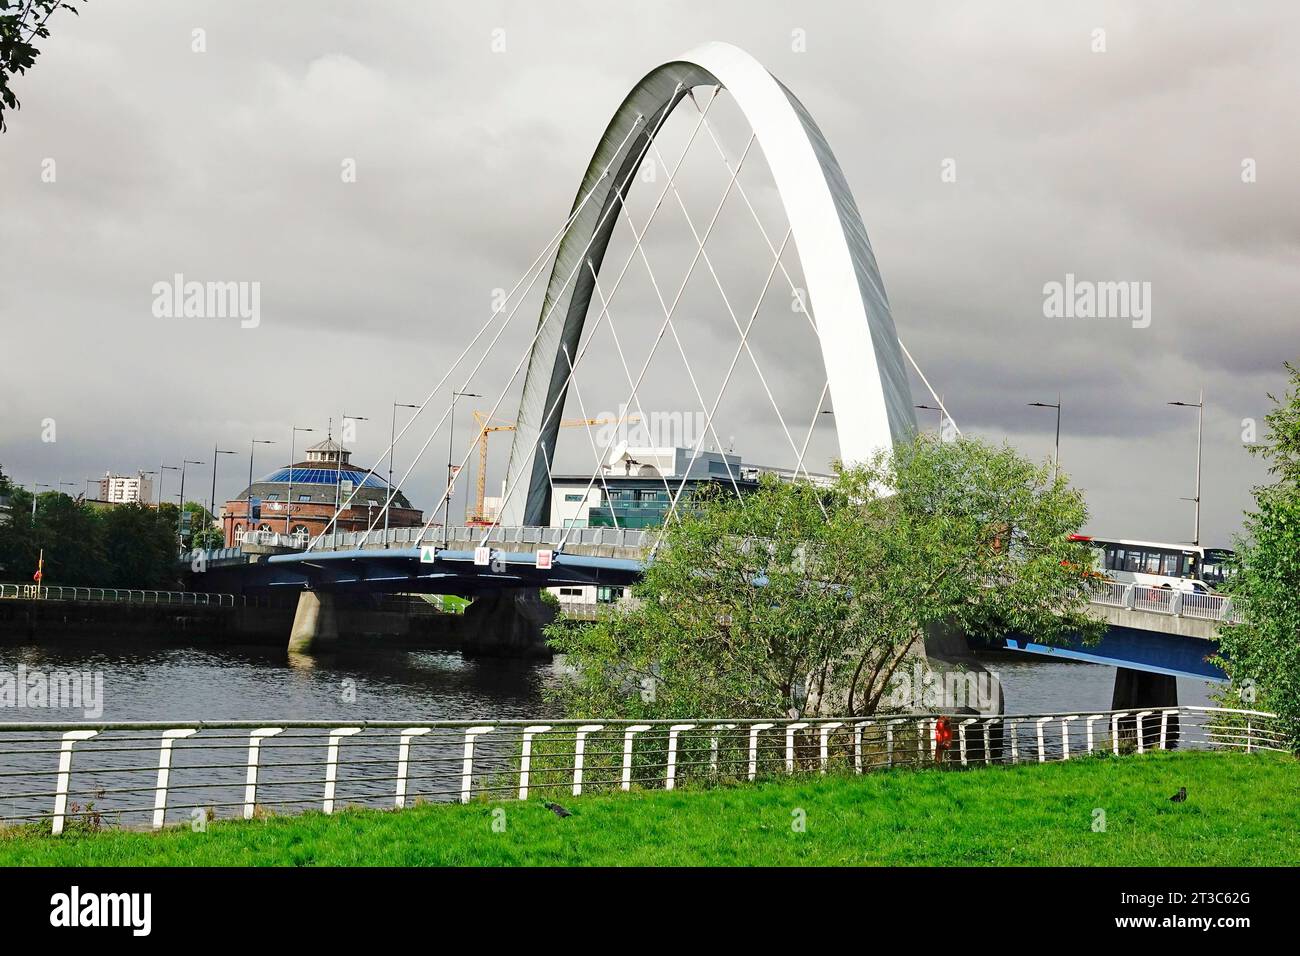 Clyde Arc Squinty Bridge am Fluss Cllyde Glasgow Schottland Großbritannien Britische Inseln Stockfoto